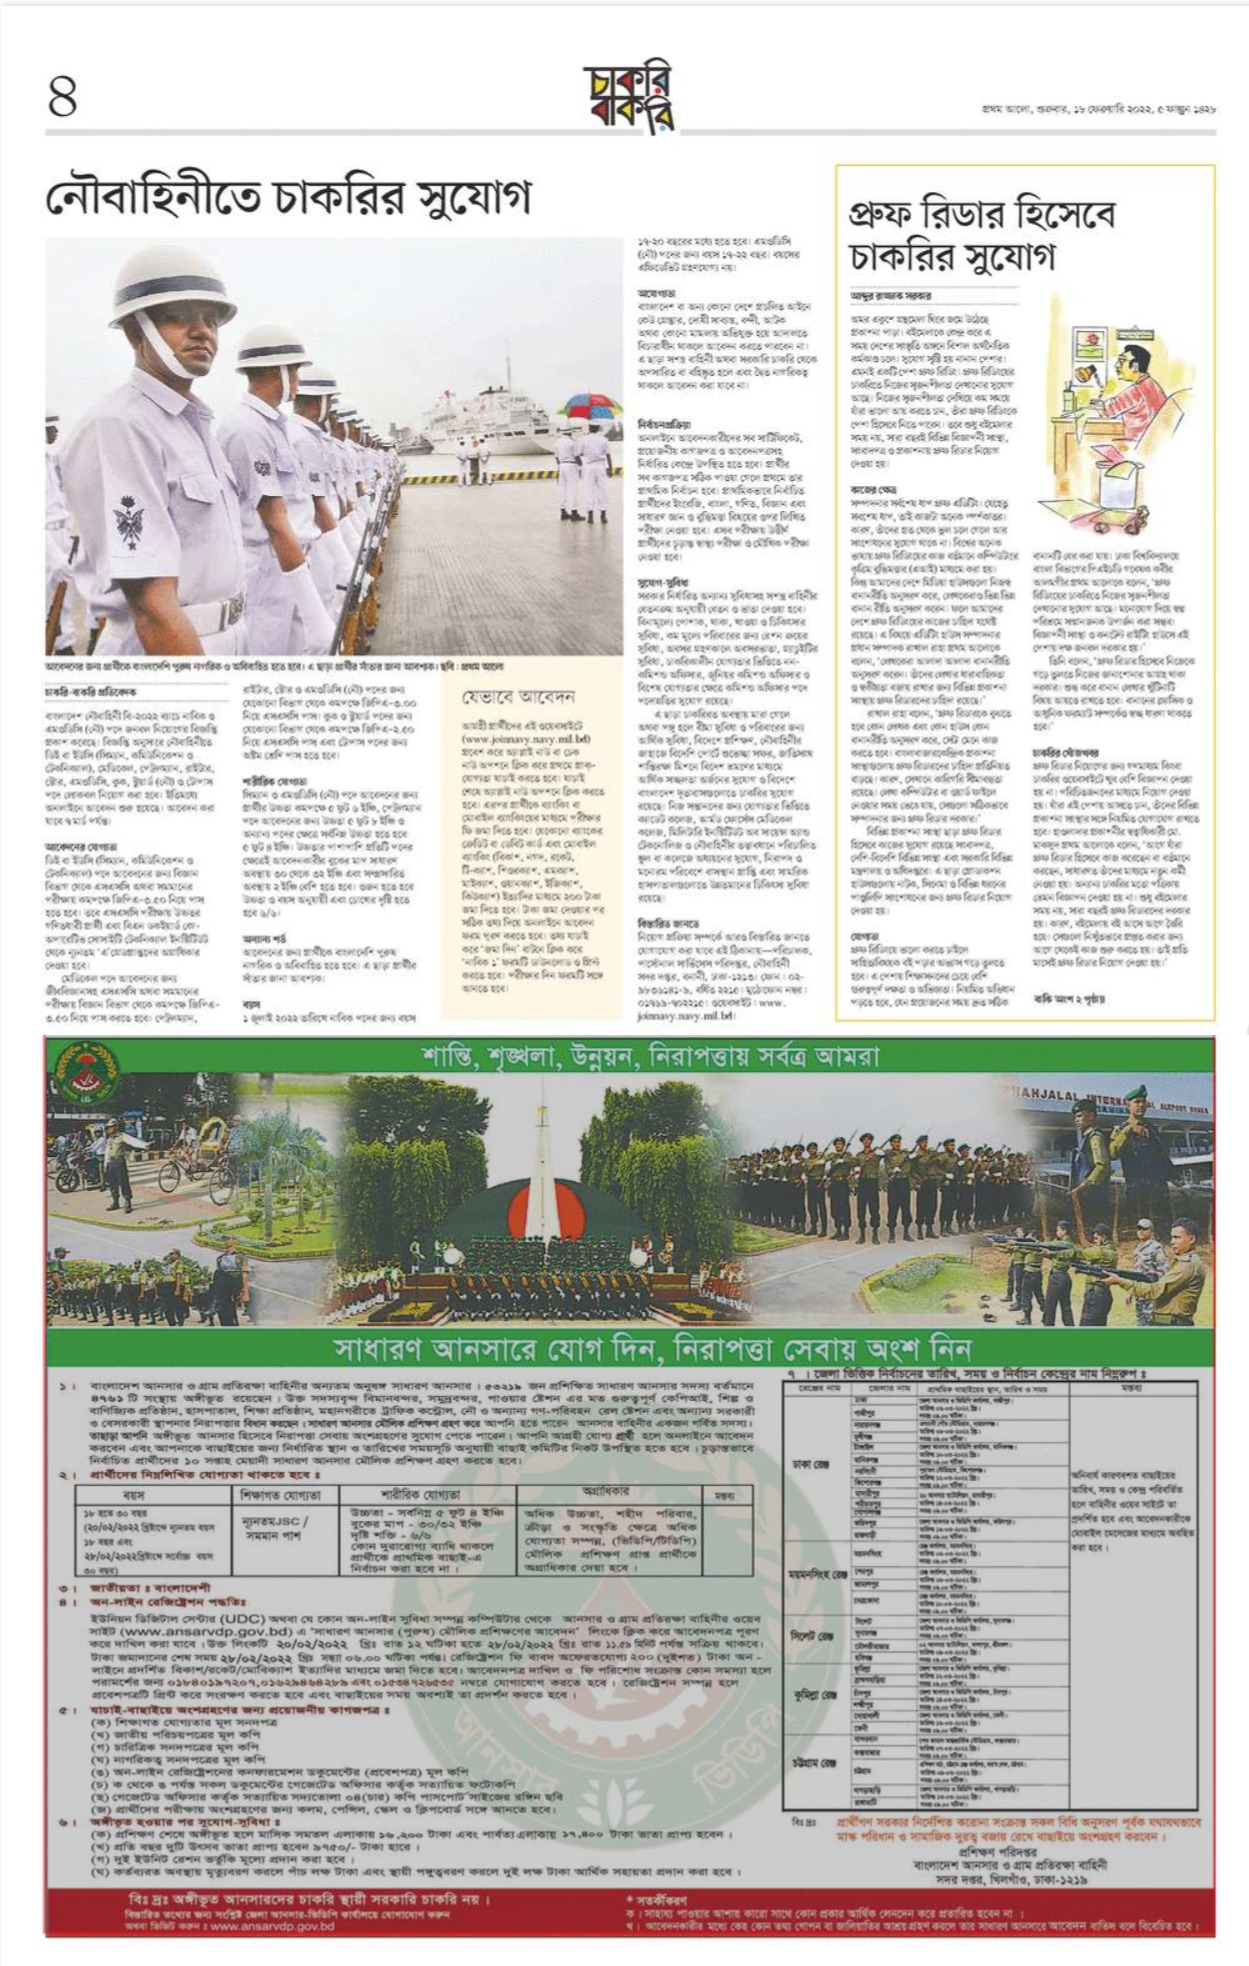 Prothom Alo Job Circular 11 January 2022 - Prothom Alo Chakri Bakri 11 February 2022 - প্রথম আলো চাকরির খবর ১১ ফেব্রুয়ারি ২০২২ - প্রথম আলো চাকরি বাকরি ২০২২ - প্রথম আলো চাকরির খবর ২০২২ - Prothom Alo Chakrir Khobor 2022